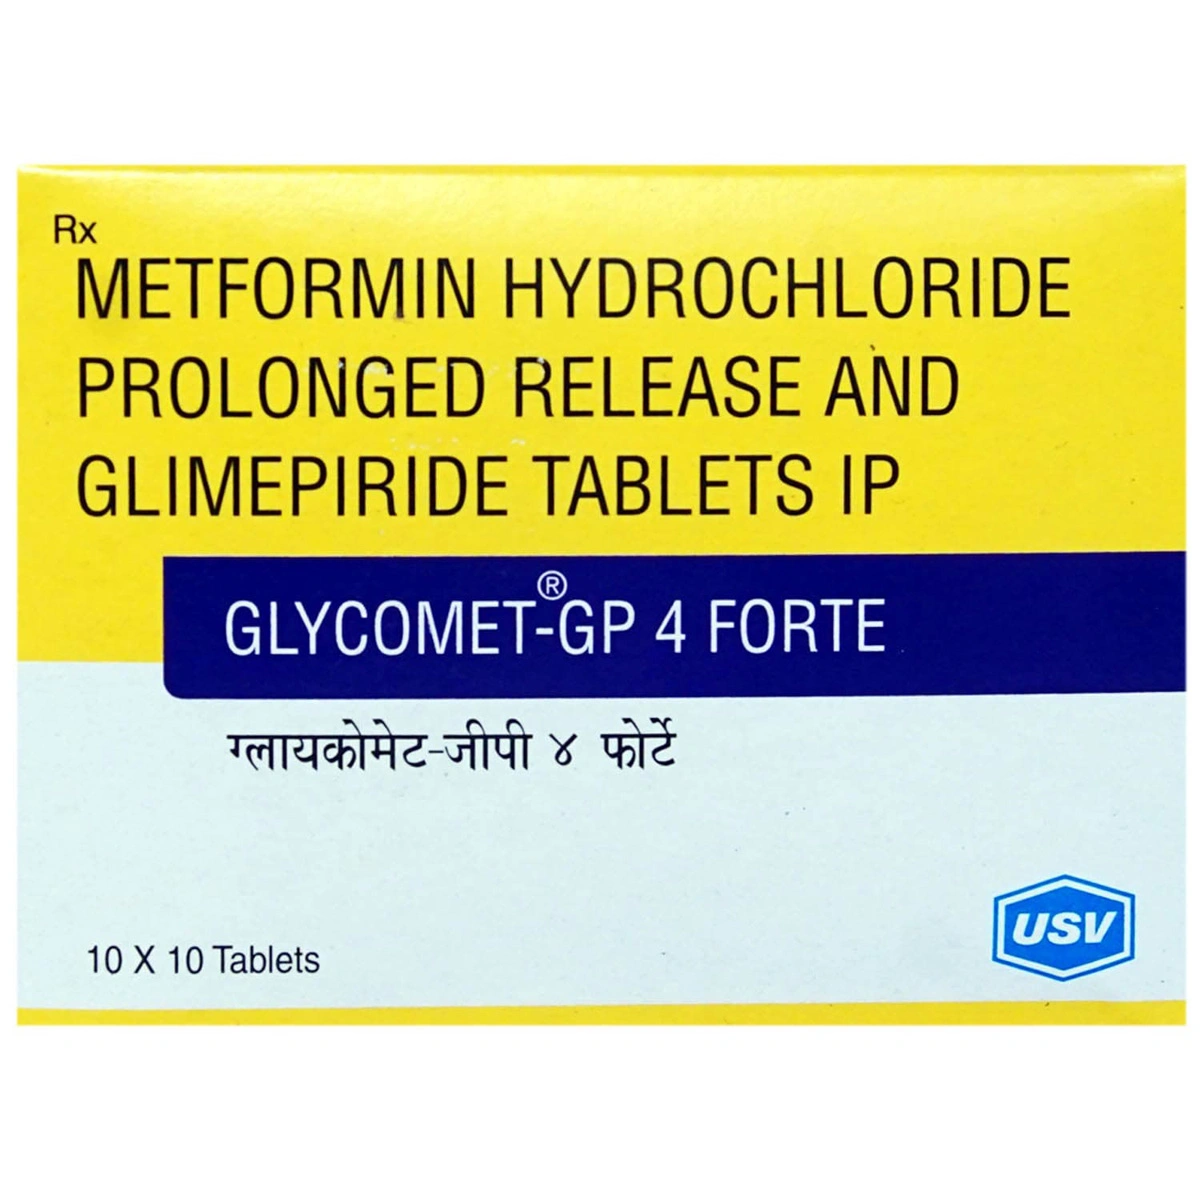 glycomet-gp-4-forte-tablet-pr